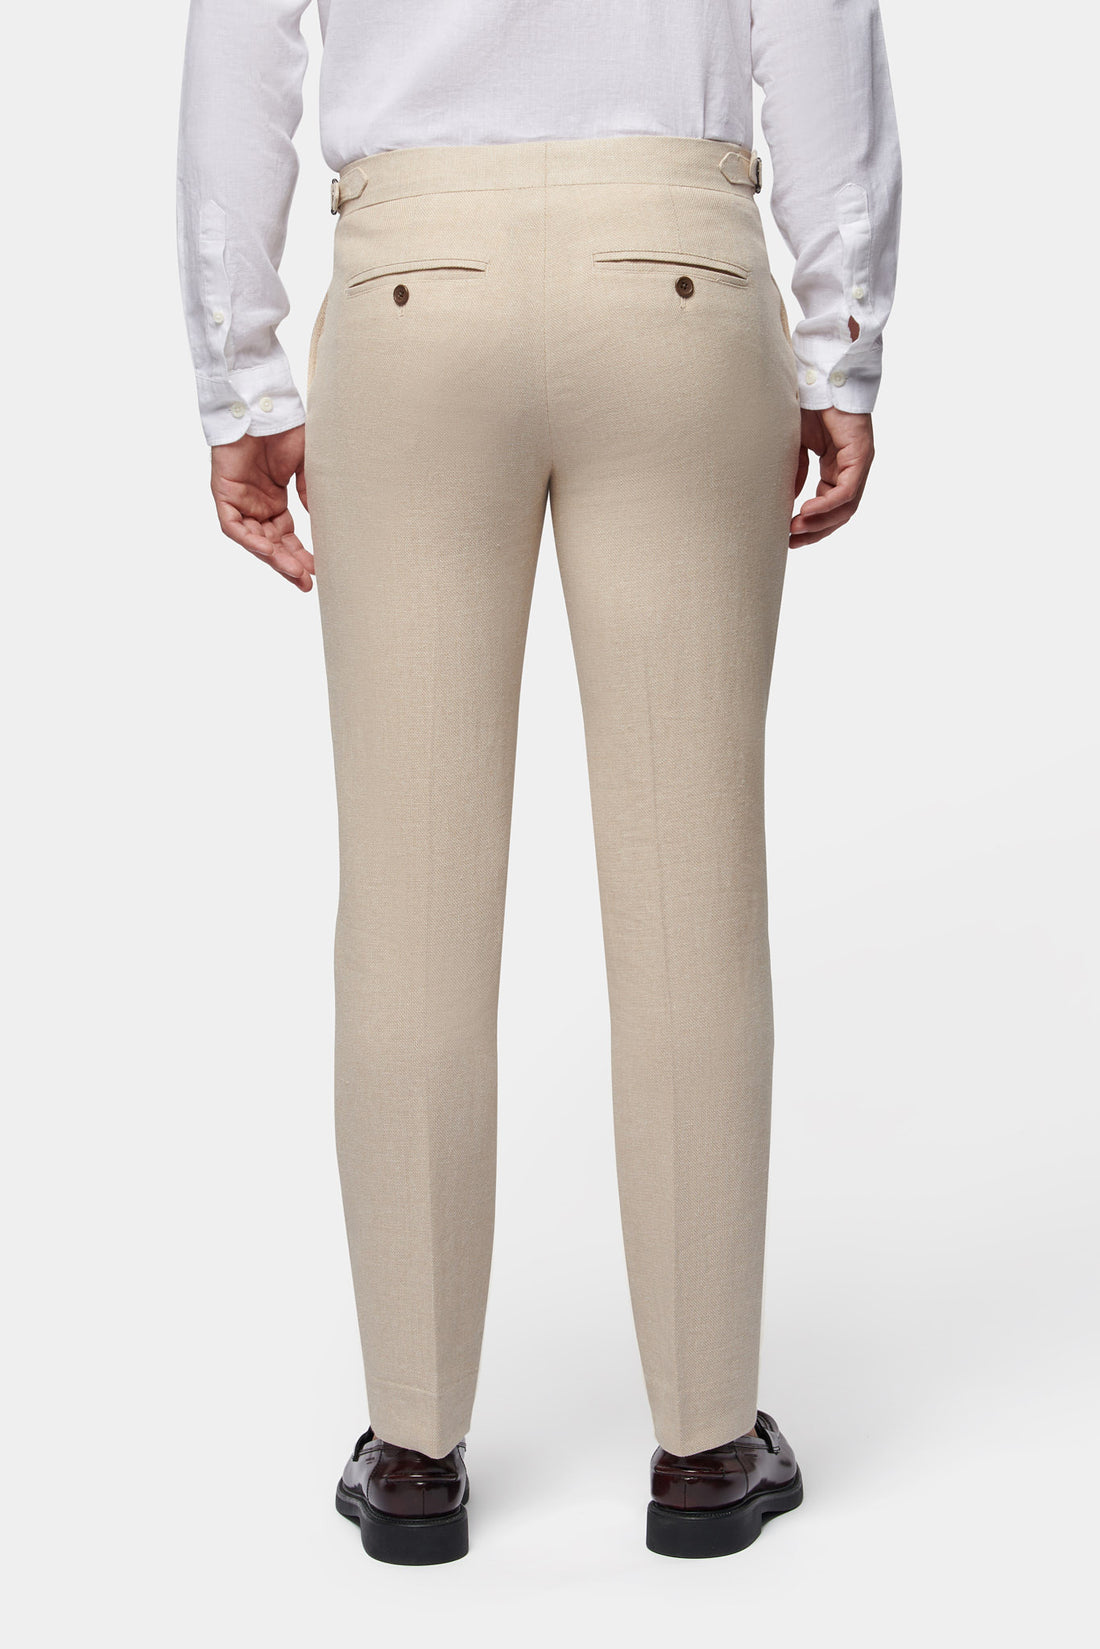 Peckham Rye Linen Blend Trousers in Egret